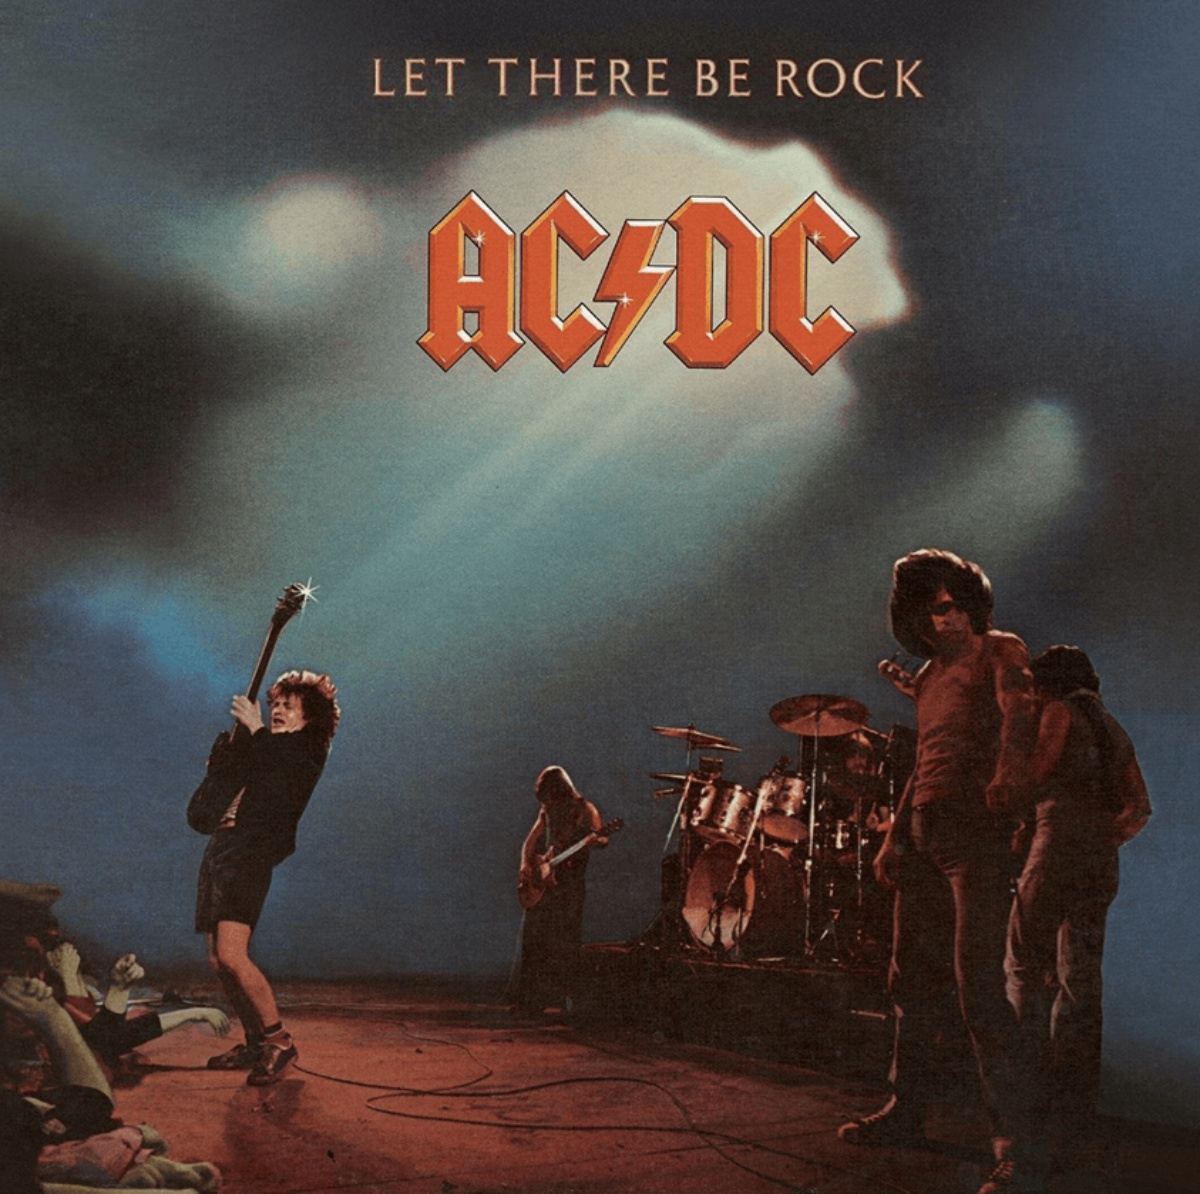 Portada del álbum 'Let There Be Rock' de AC/DC